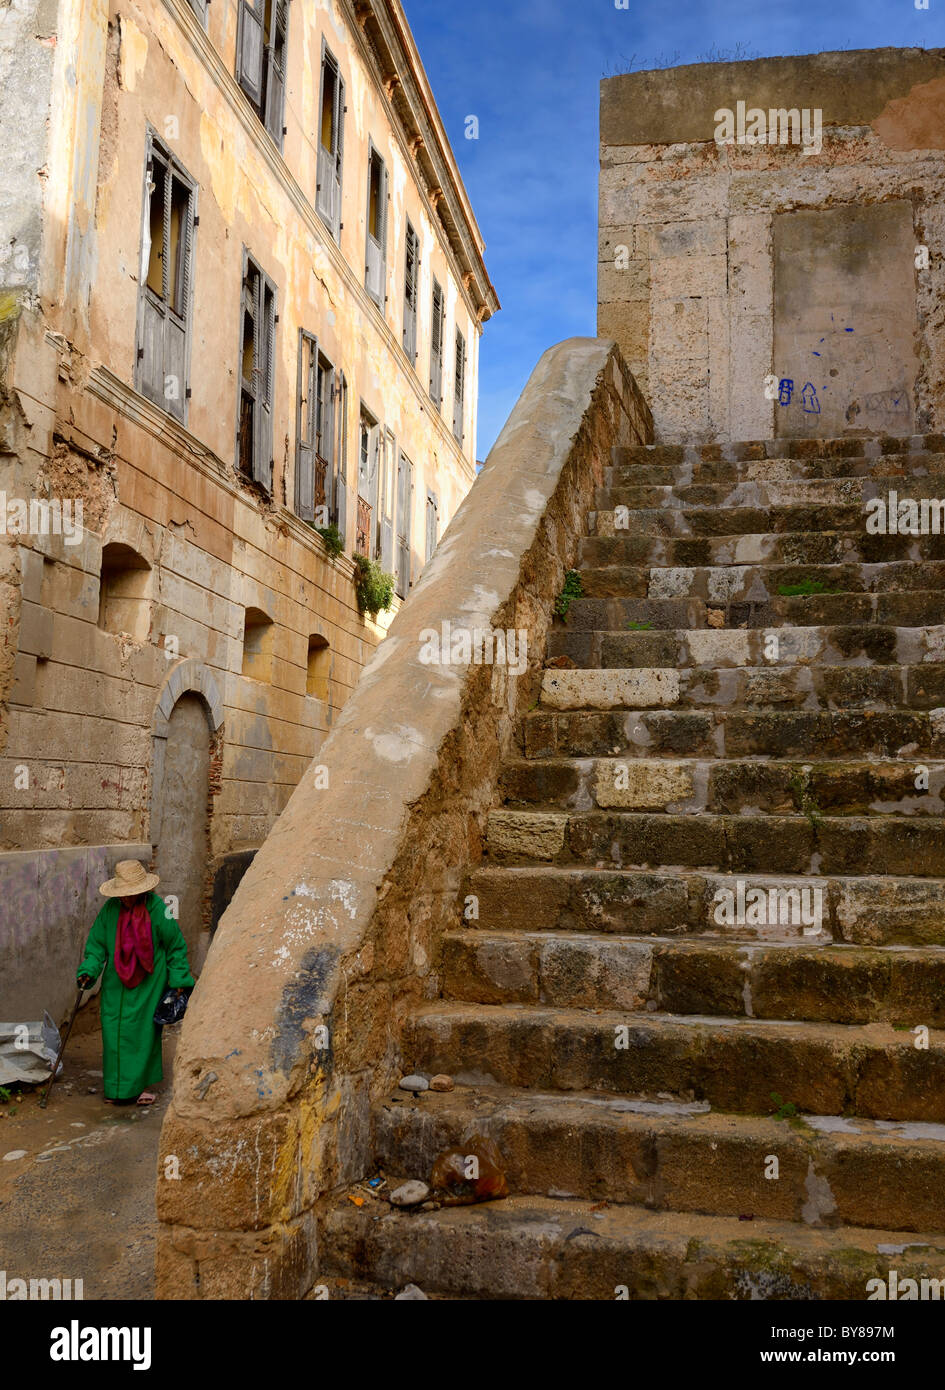 Donna vecchia a piedi nella medina della vecchia città portoghese di El Jadida Marocco con gradini in pietra Foto Stock